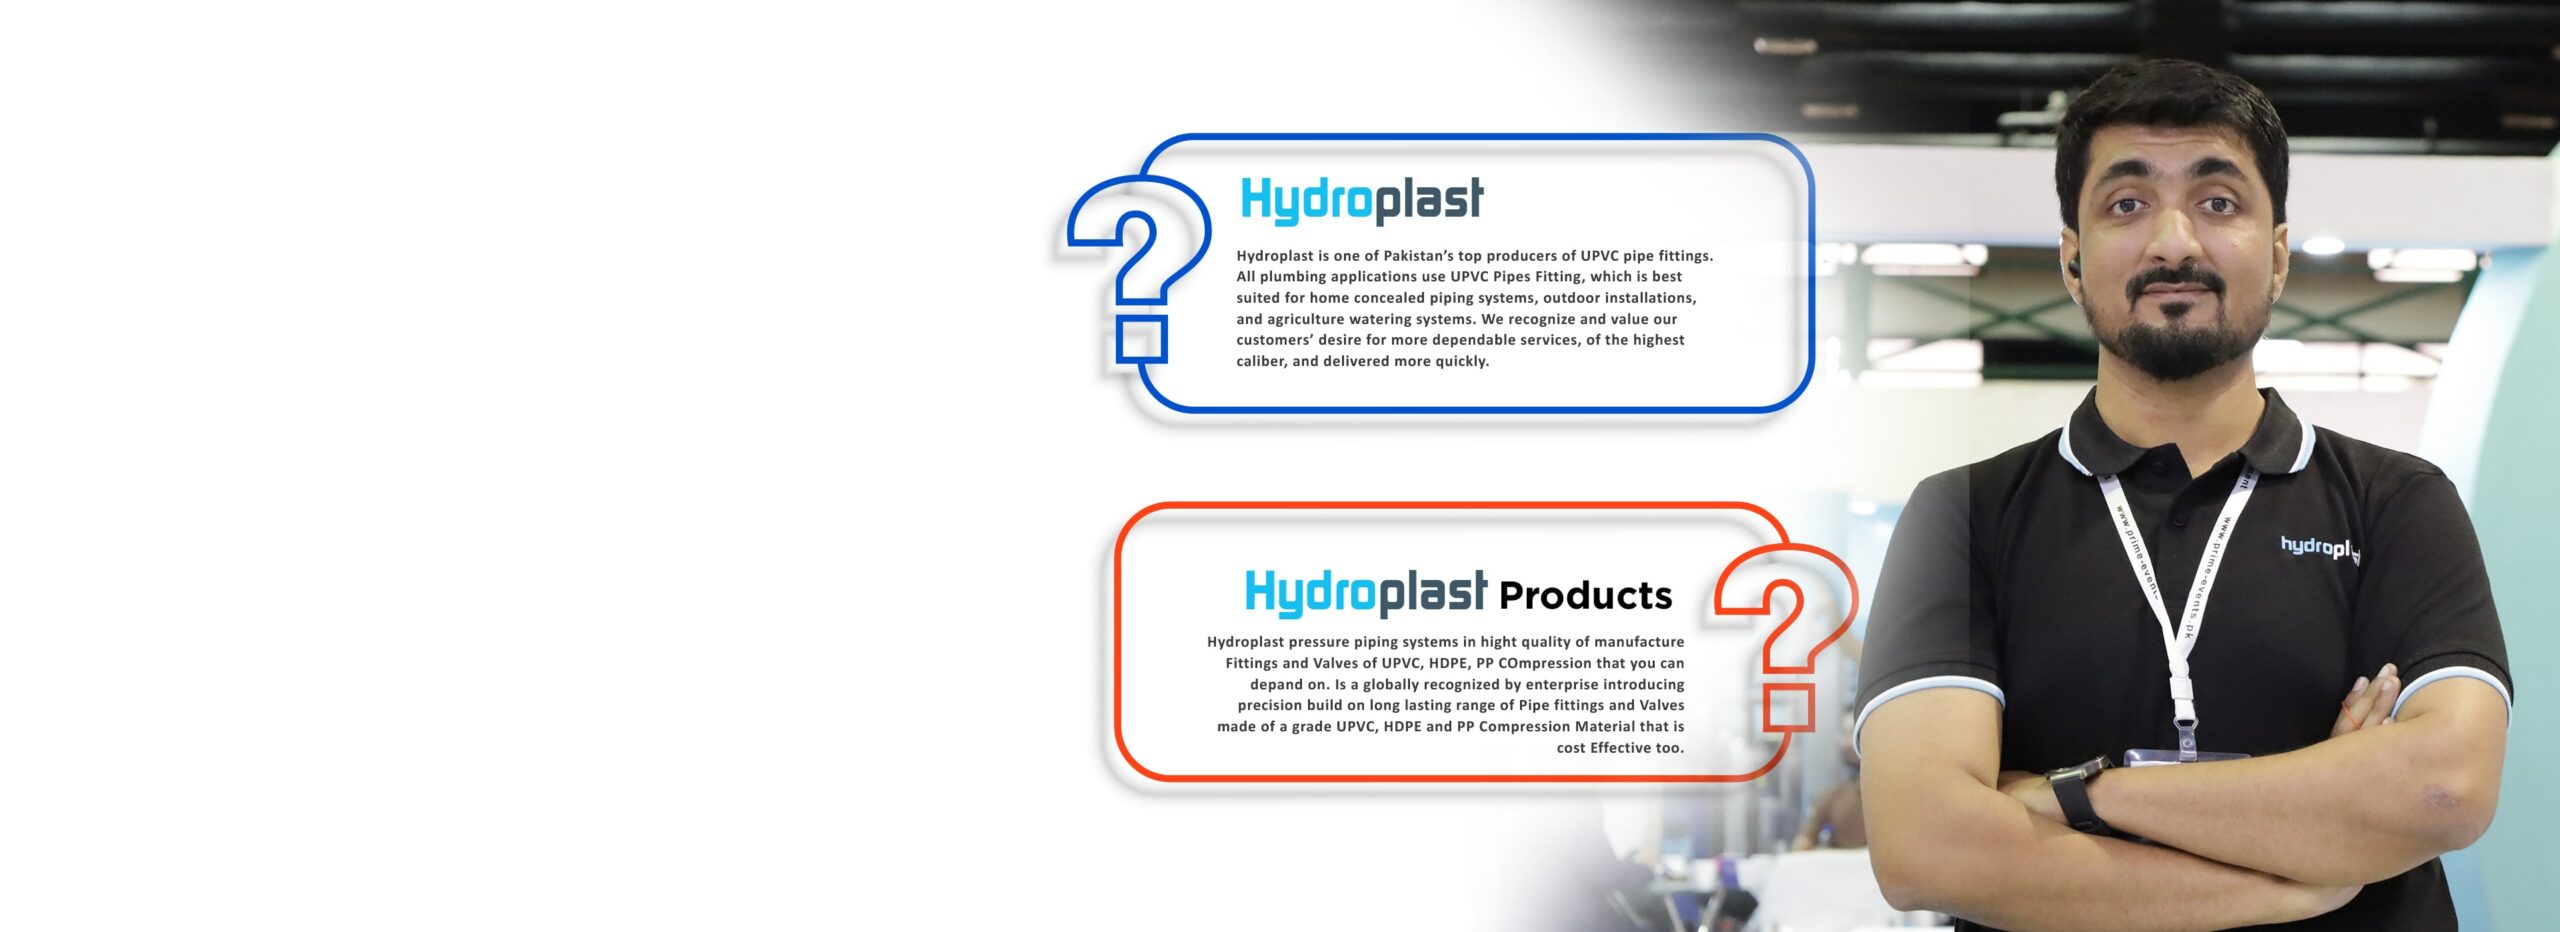 Hydroplast-Faheem-Ganatra FAQ